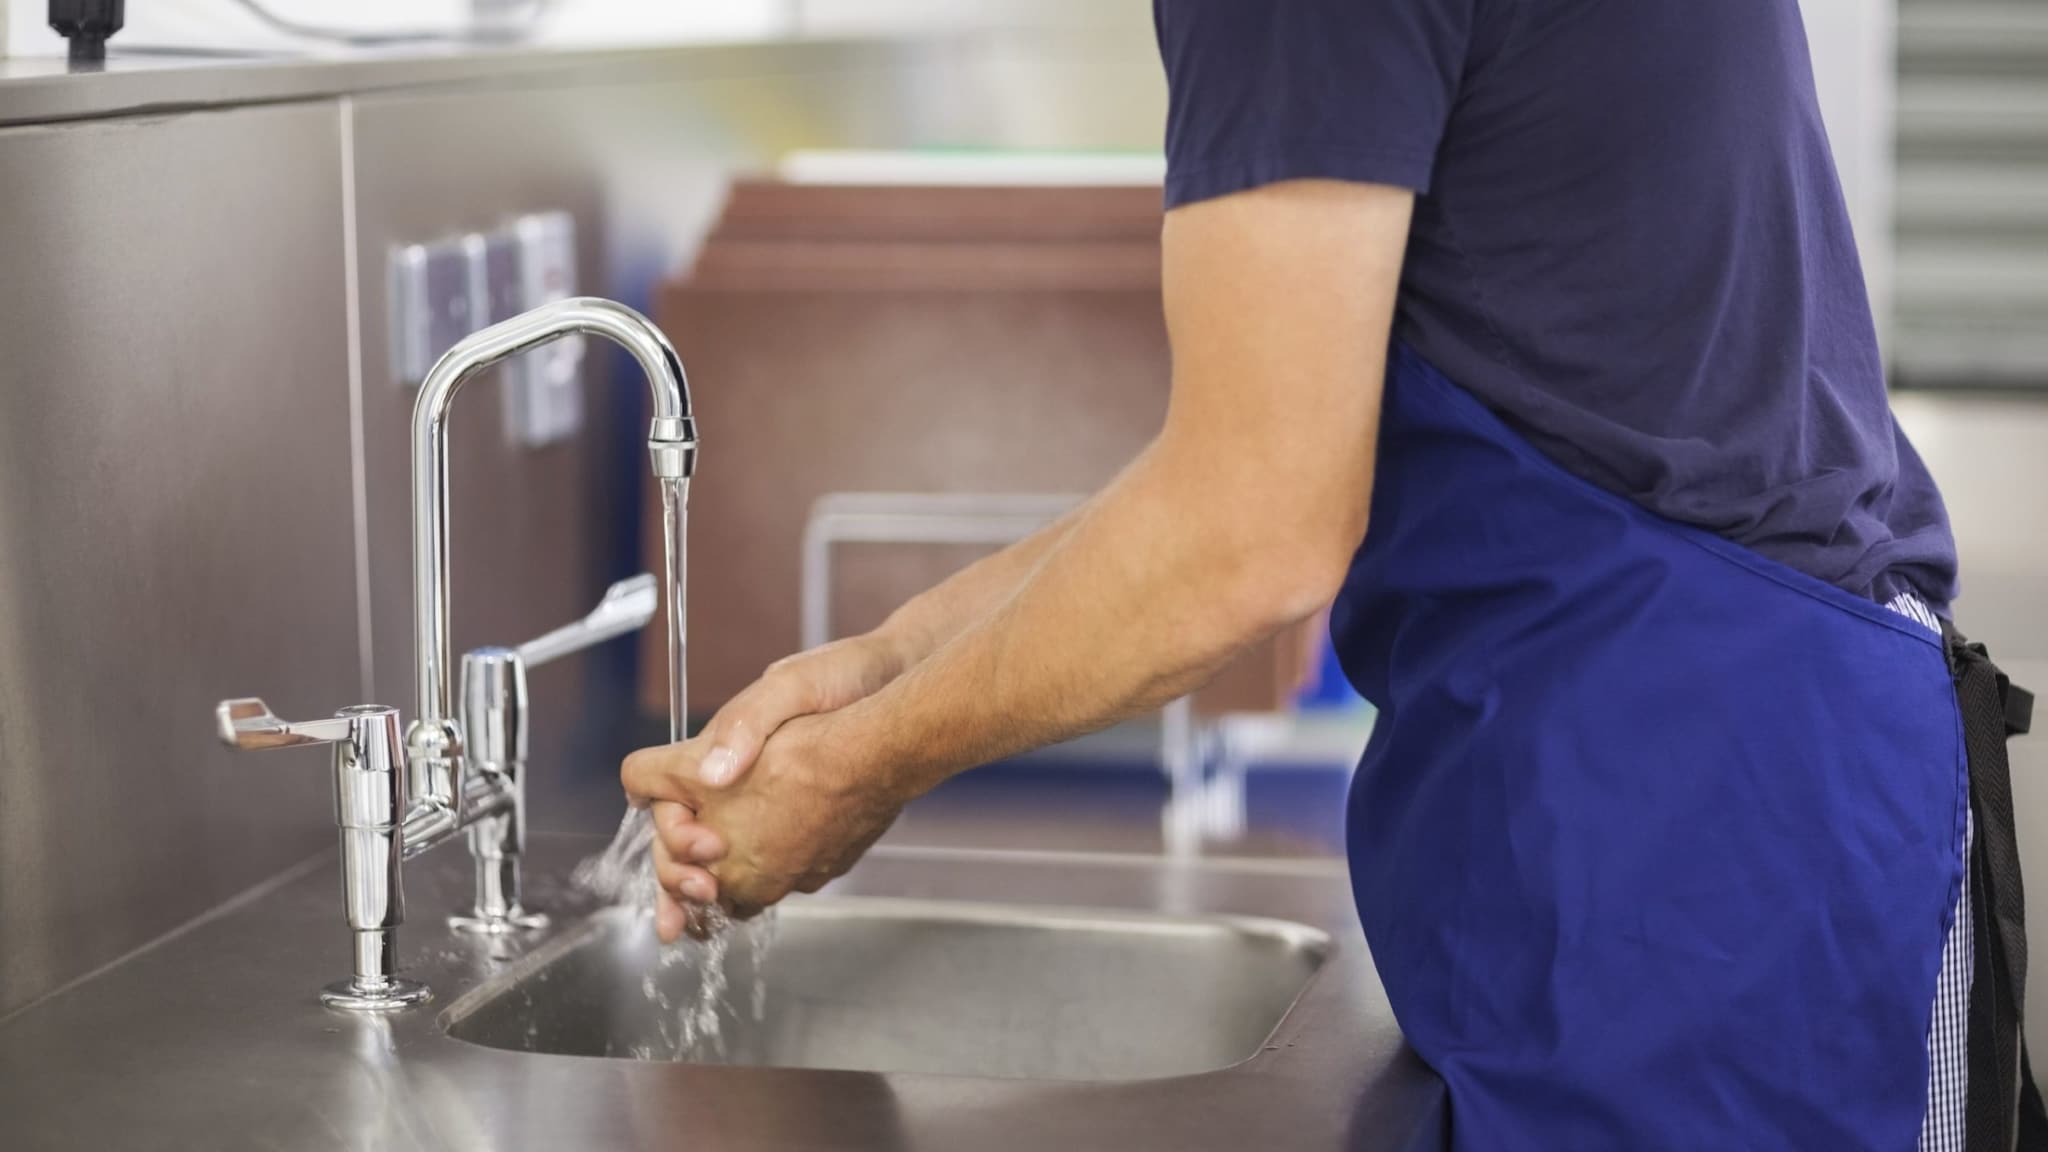 Person washing their hands at a restaurant kitchen sink.